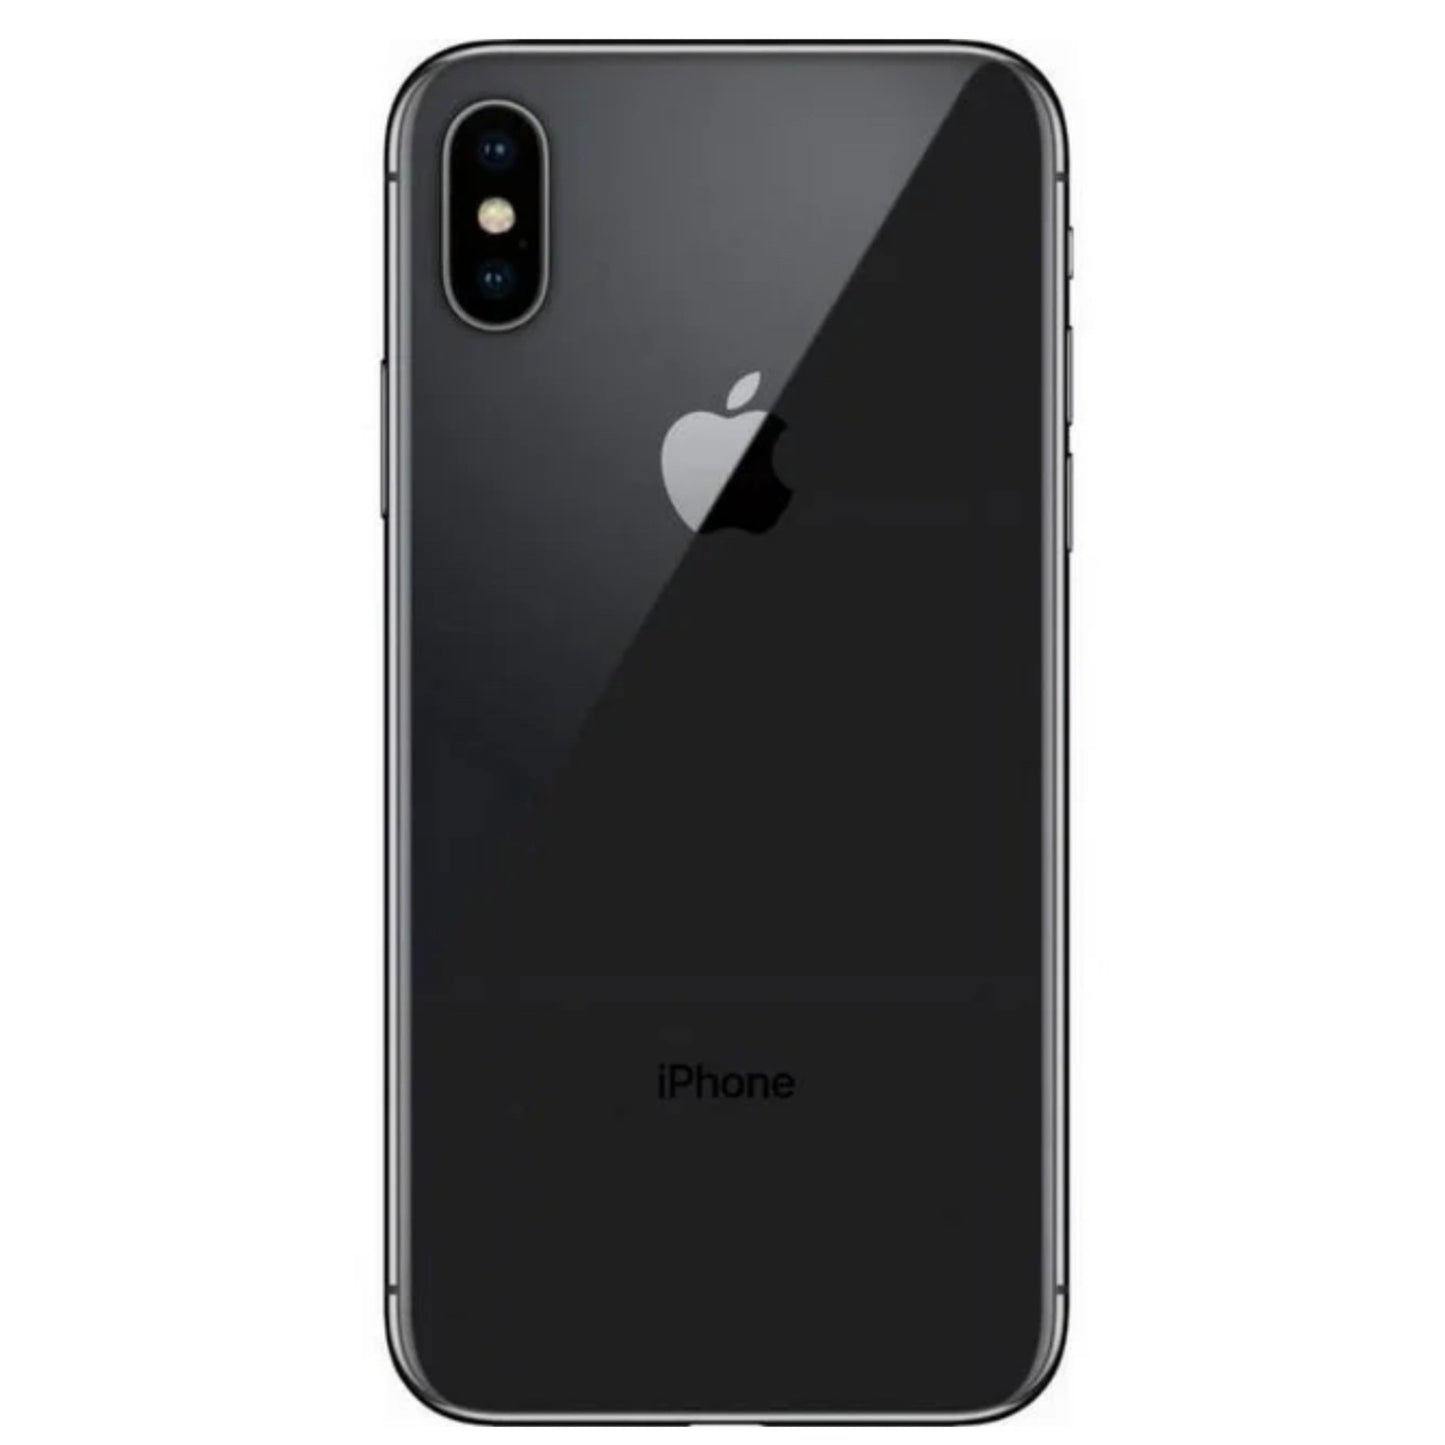 iPhone X gris espacial 64 GB (desbloqueado) usado